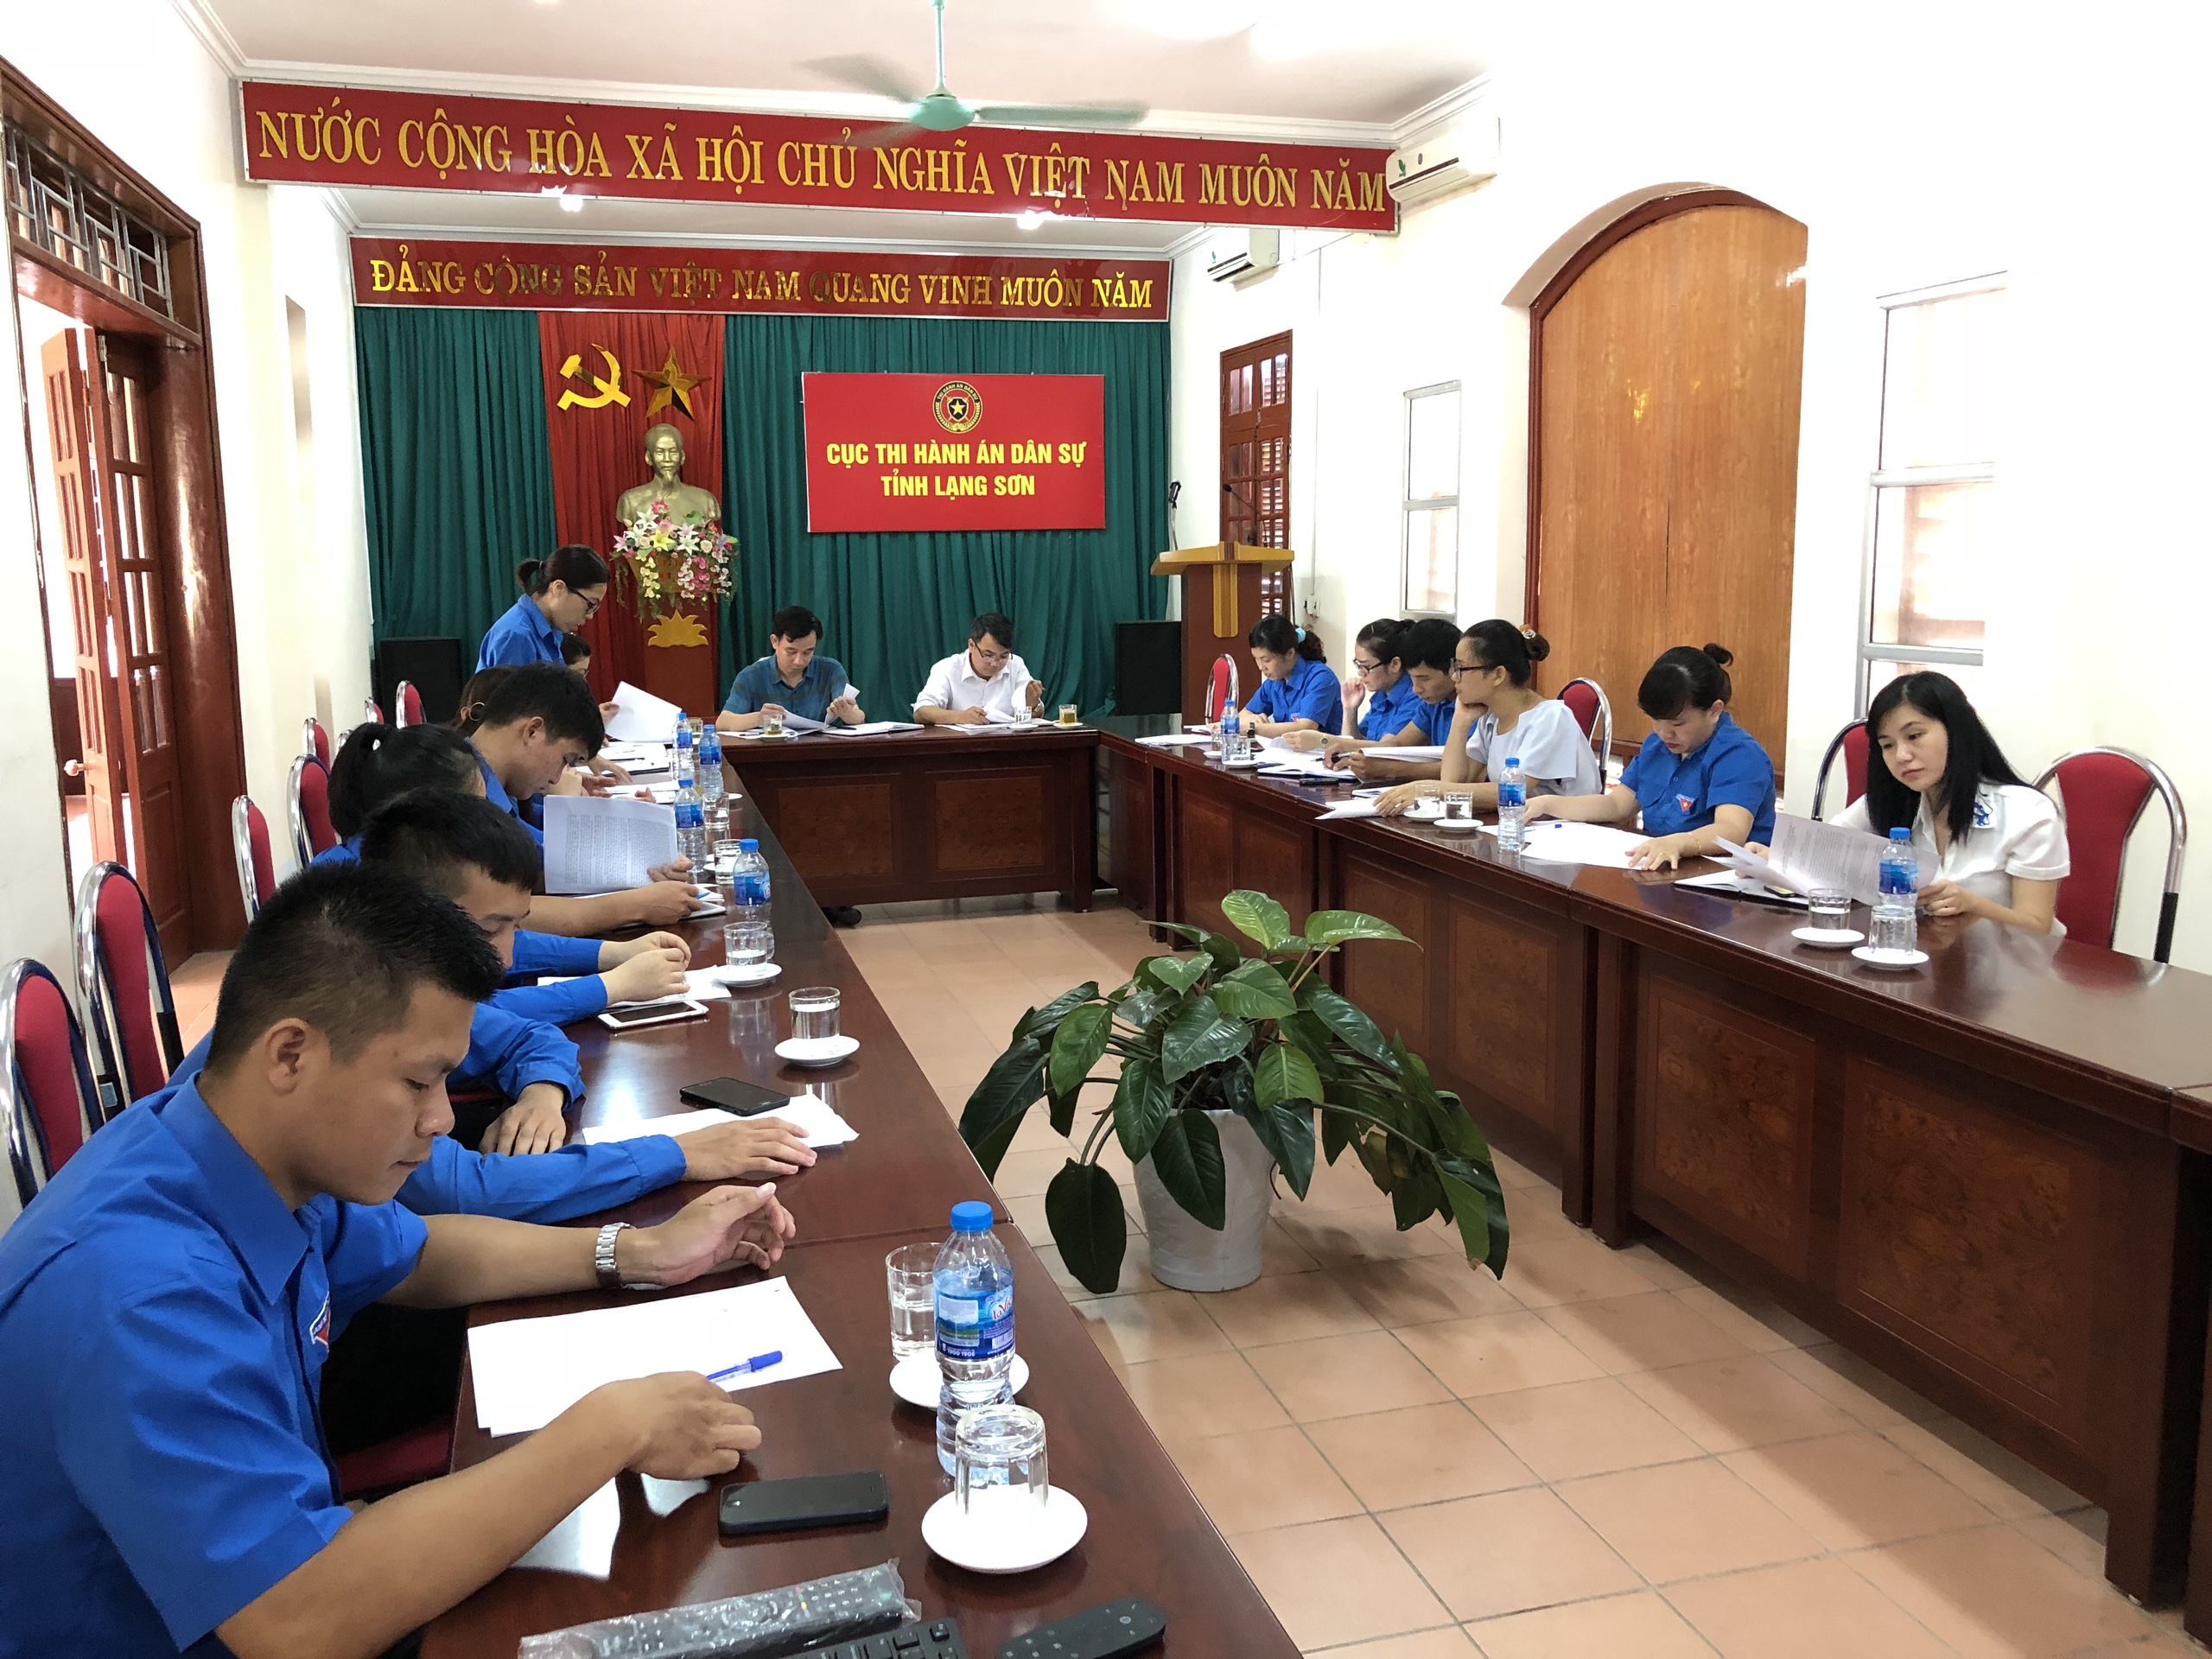 Chi đoàn Thanh niên Cục Thi hành án dân sự tỉnh Lạng Sơn Thực hiện nội dung đột phá năm 2018 “Nâng cao chất lượng sinh hoạt chuyên đề”